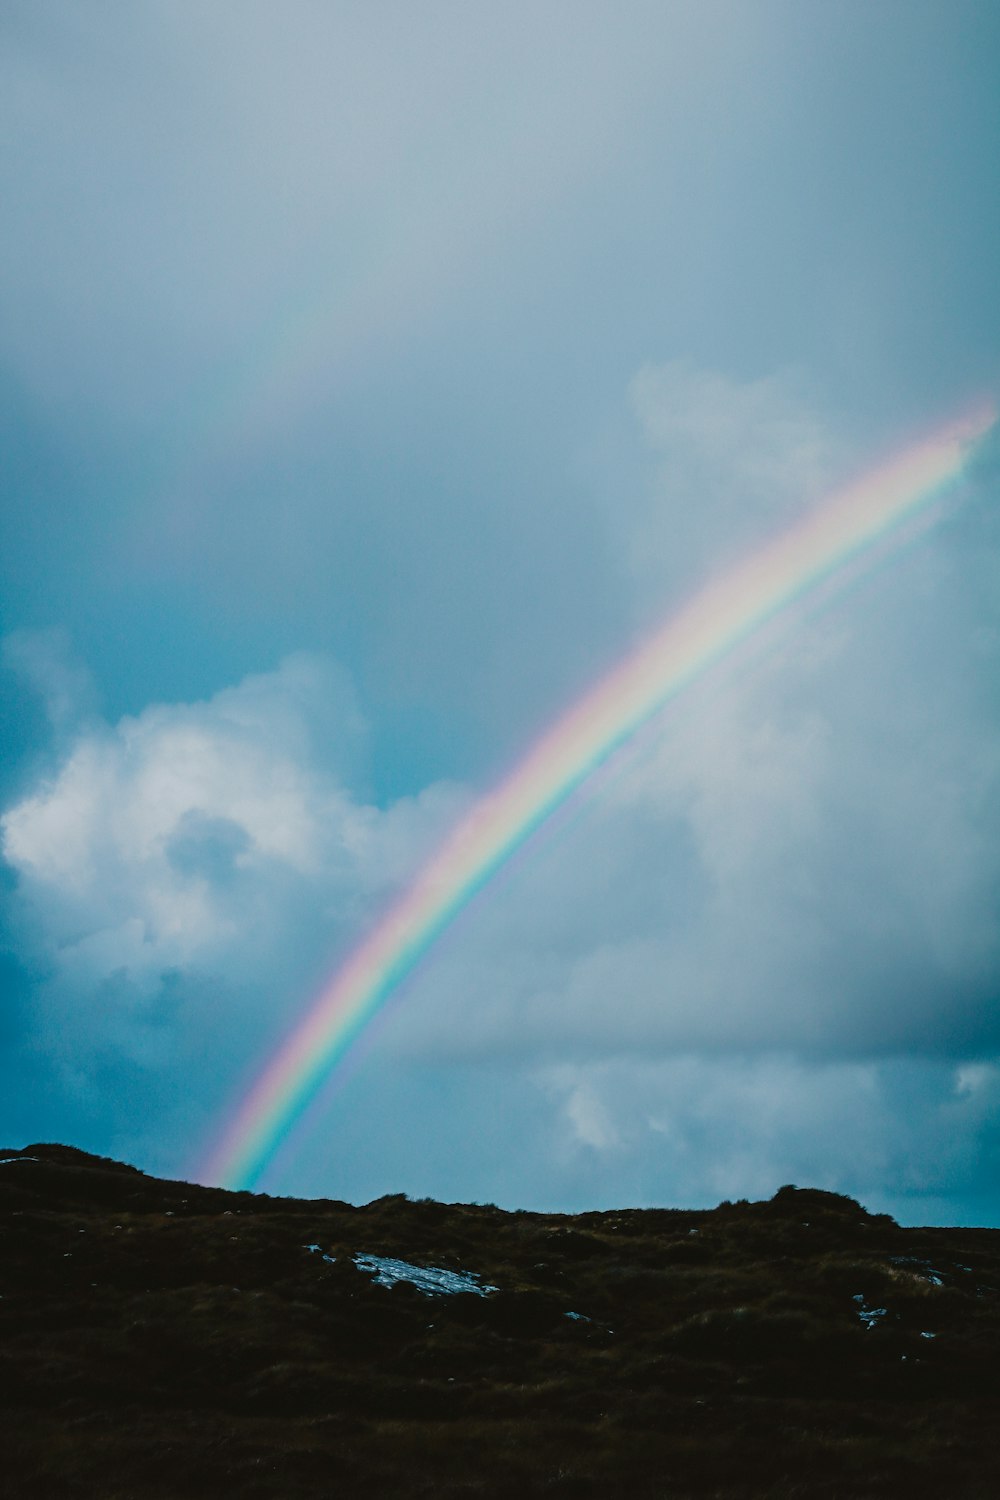 Un arcobaleno appare nel cielo sopra una collina